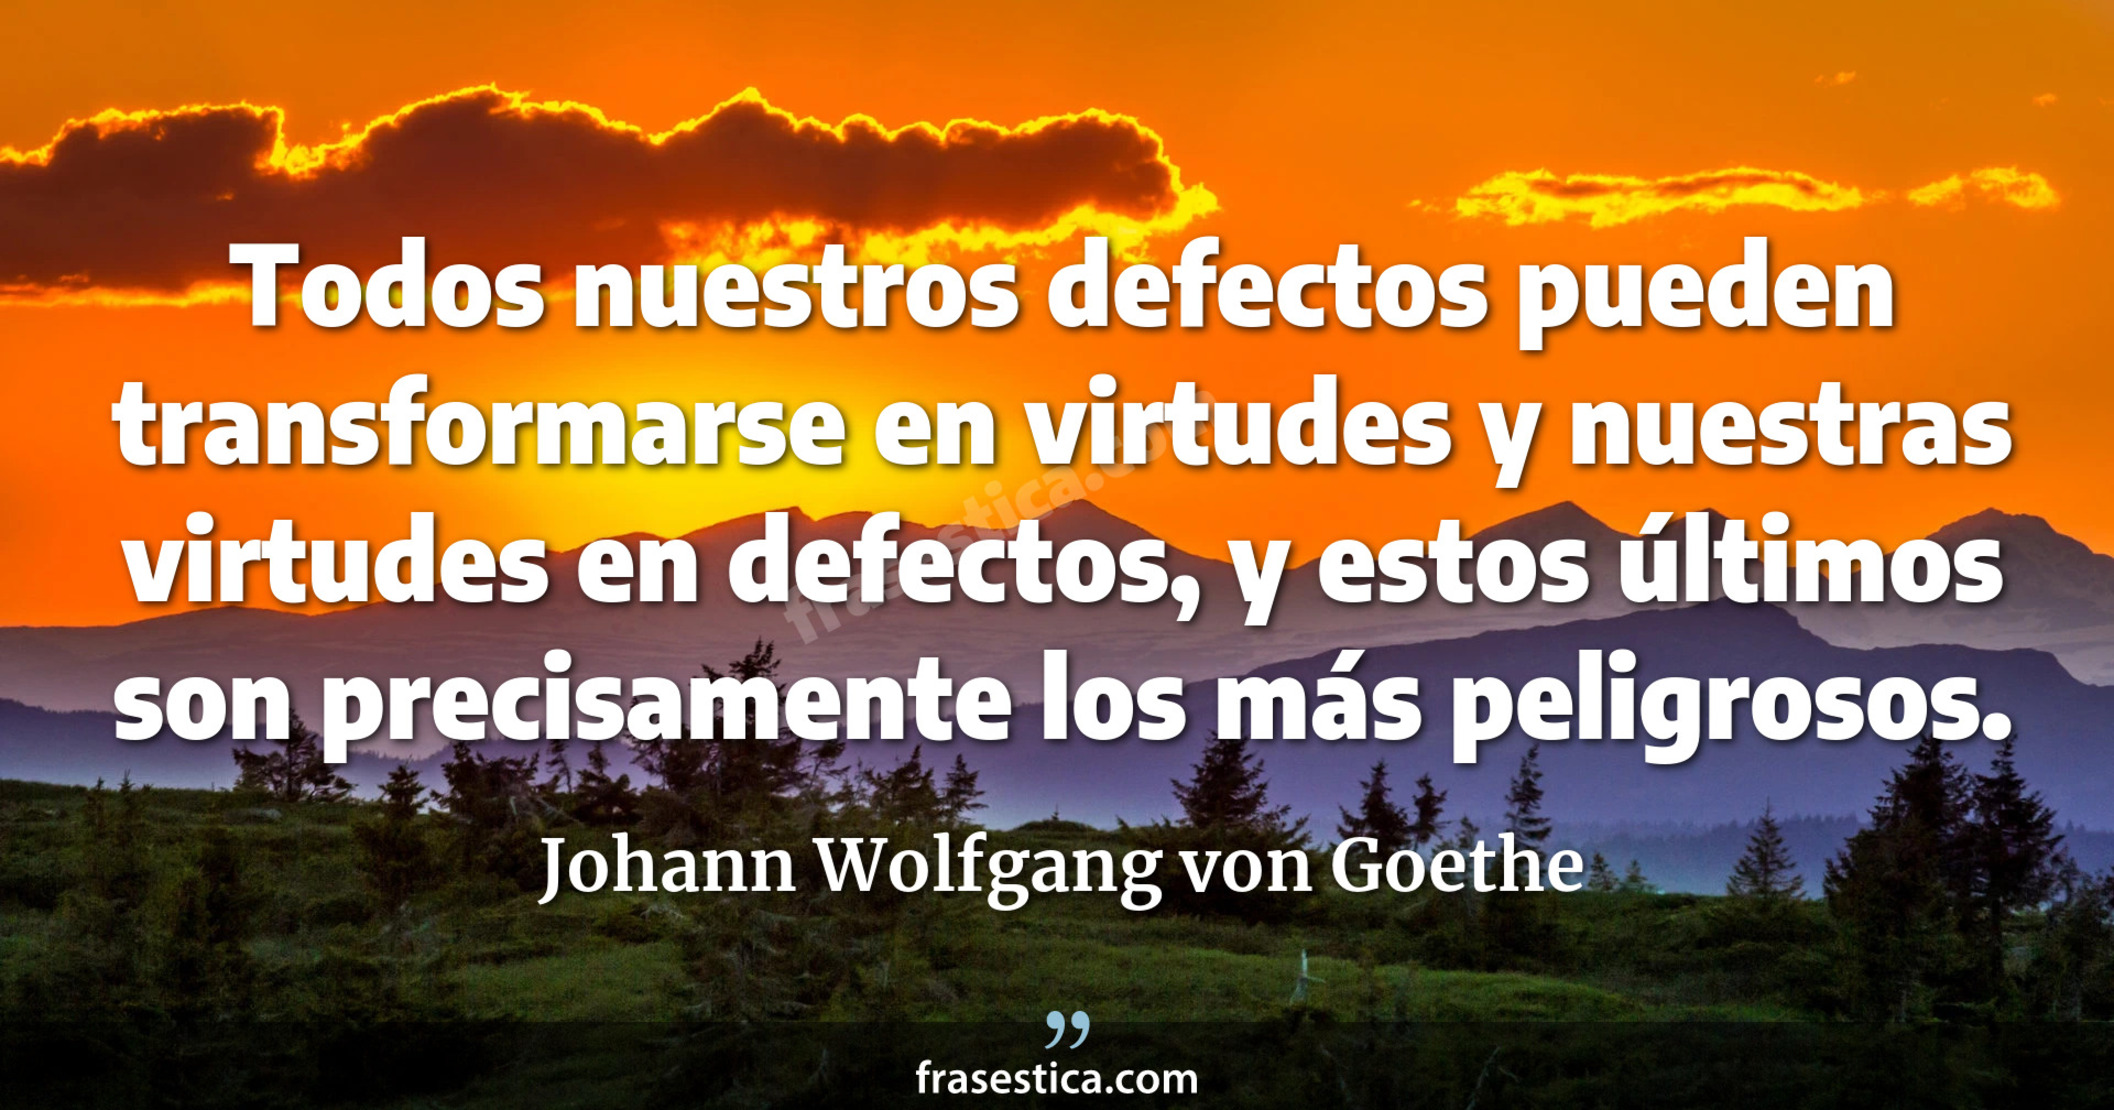 Todos nuestros defectos pueden transformarse en virtudes y nuestras virtudes en defectos, y estos últimos son precisamente los más peligrosos. - Johann Wolfgang von Goethe